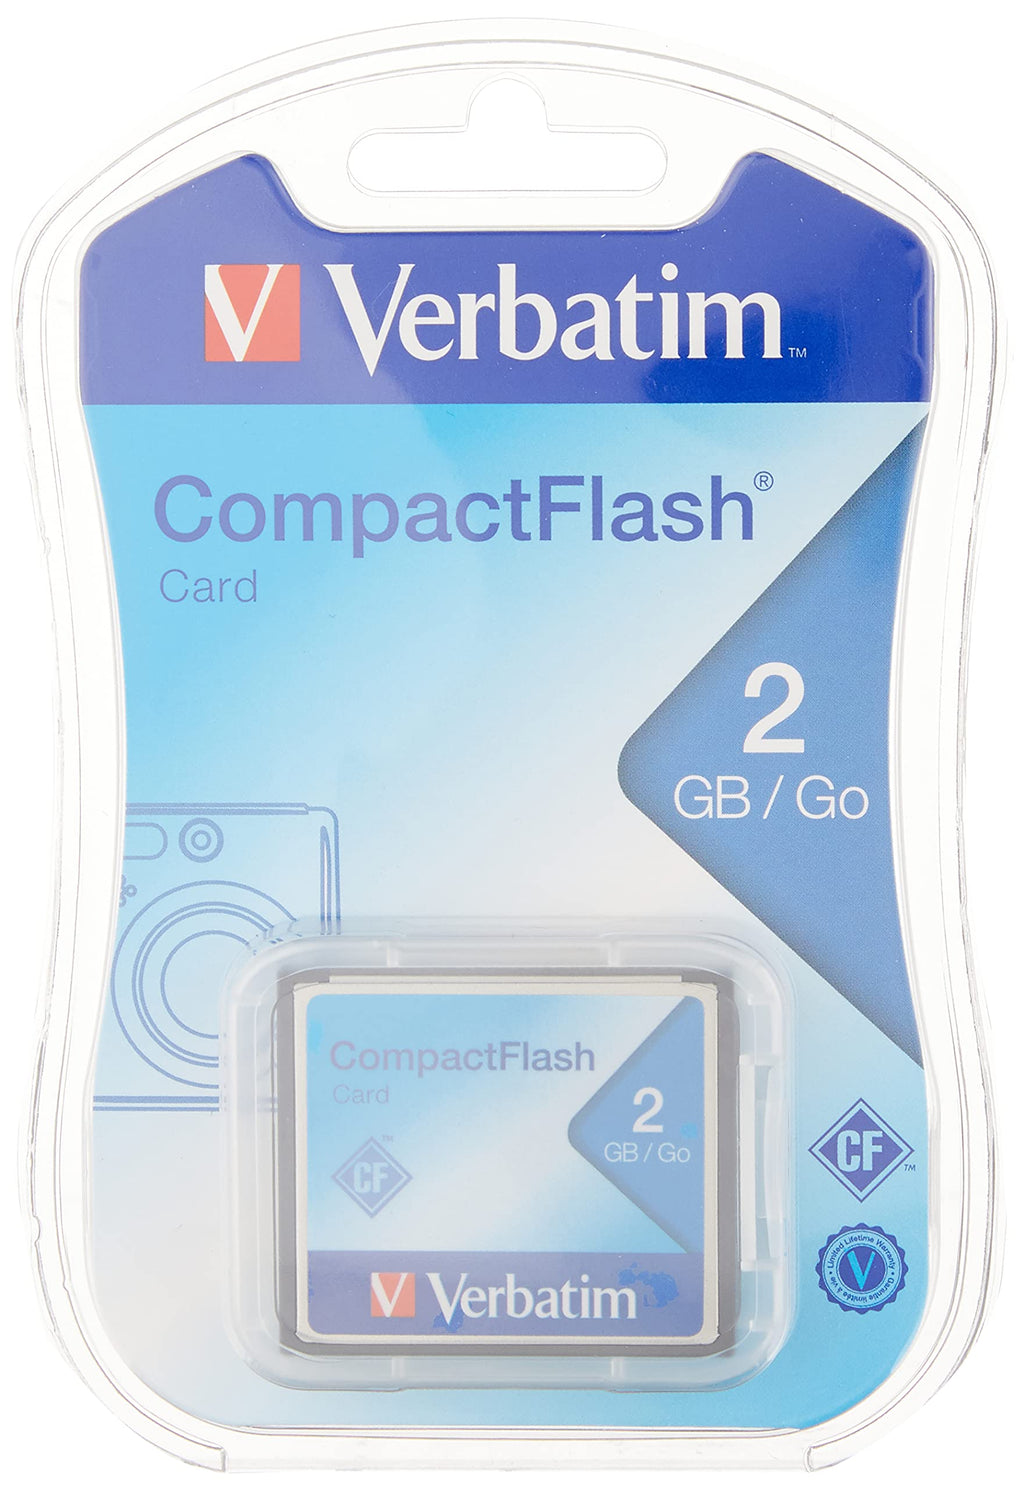 Verbatim 2GB CompactFlash Memory Card, Black, Model Number: 47012 - LeoForward Australia